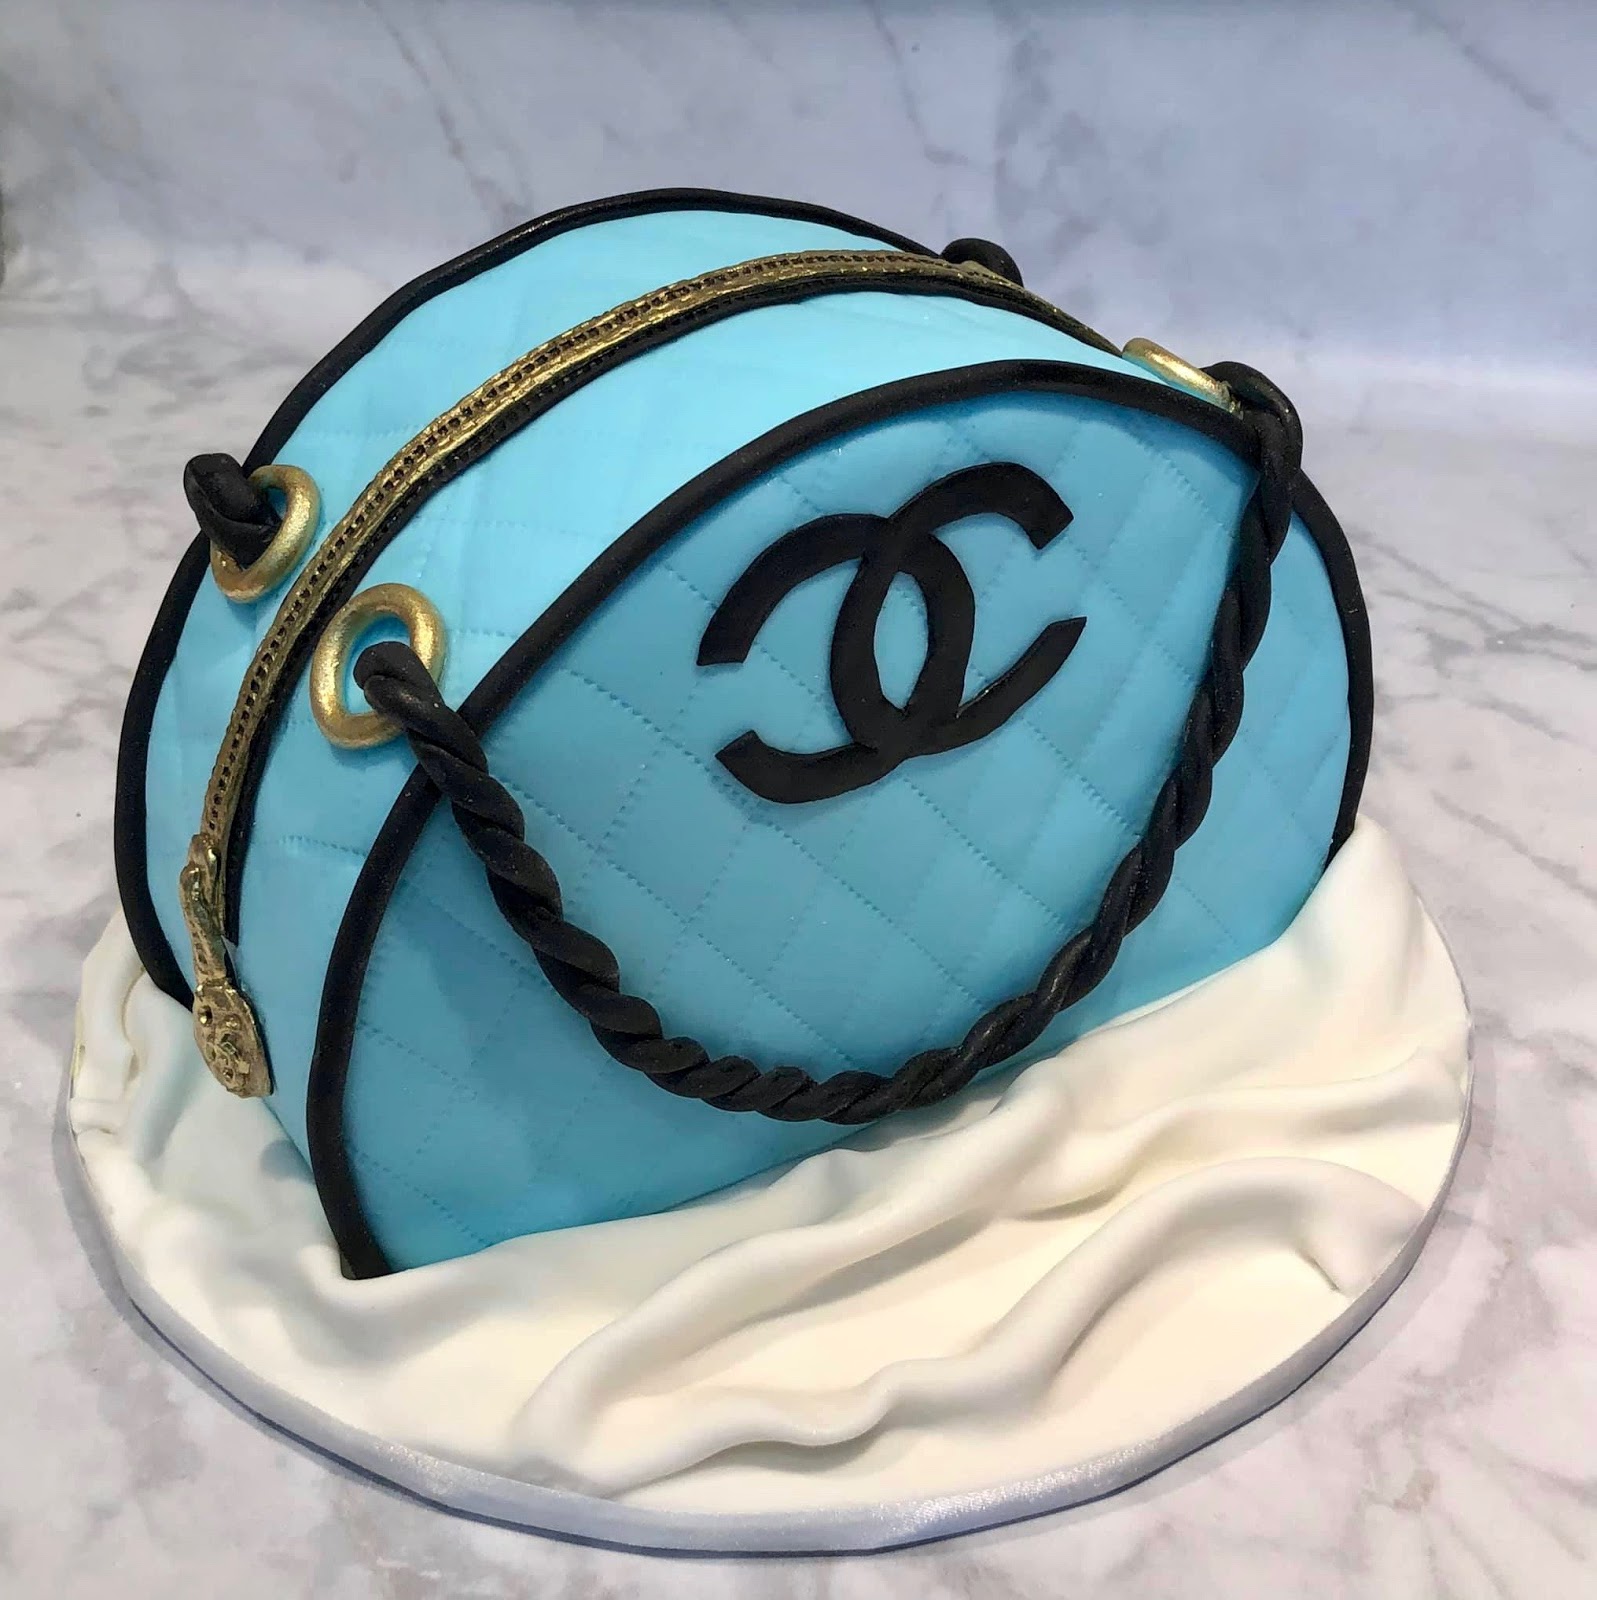 Chanel Bag Cake 